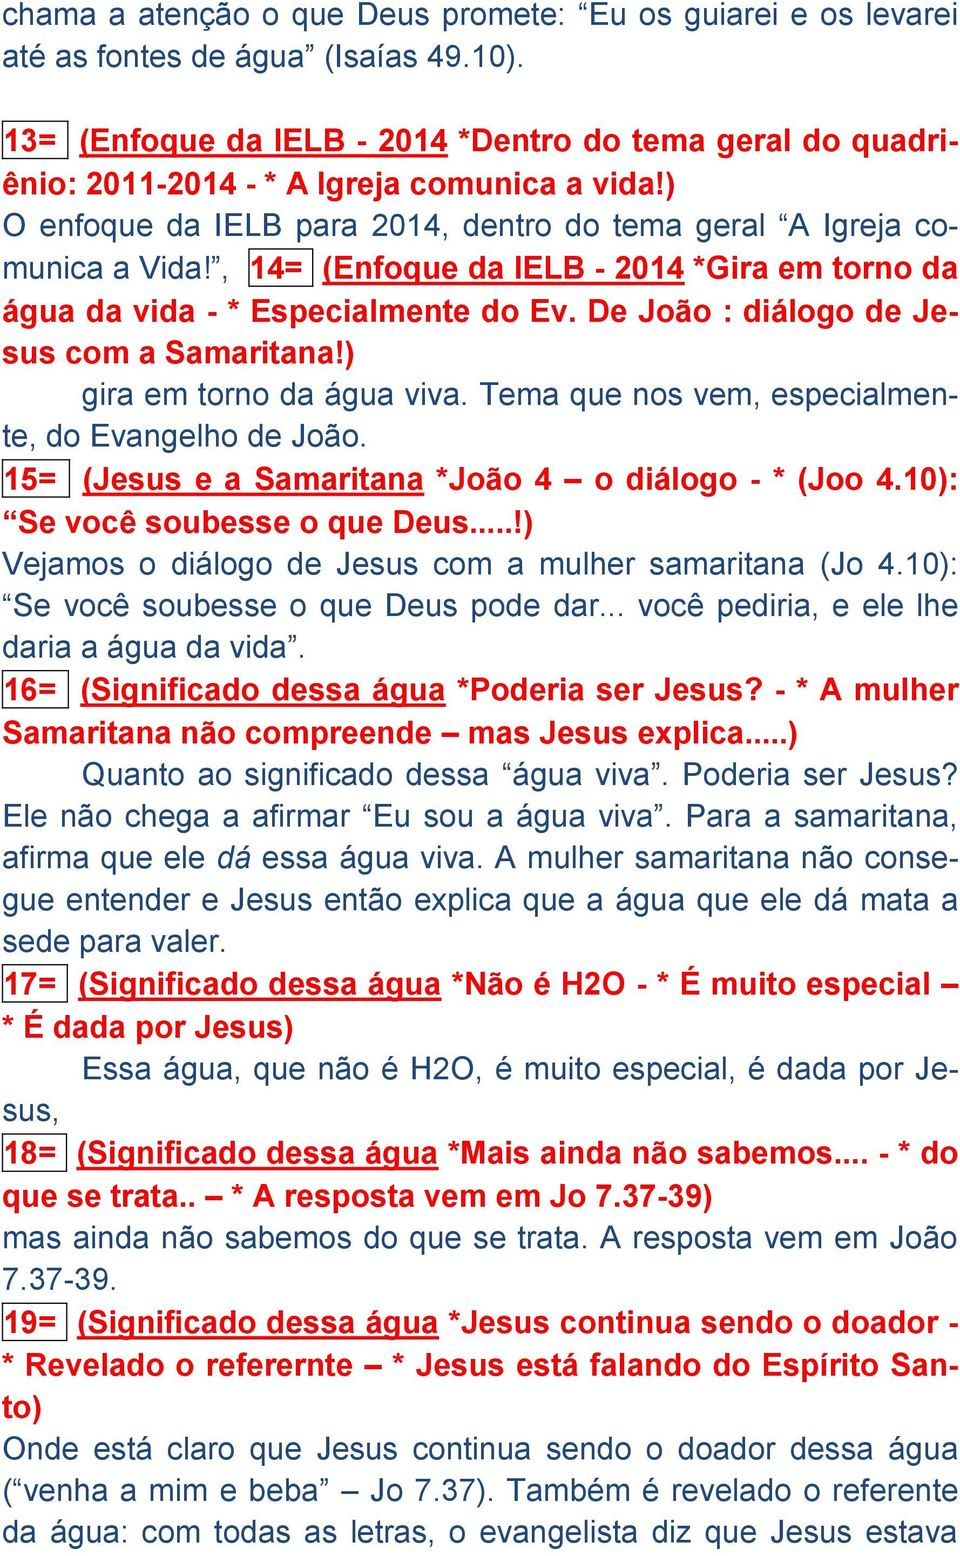 , 14= (Enfoque da IELB - 2014 *Gira em torno da água da vida - * Especialmente do Ev. De João : diálogo de Jesus com a Samaritana!) gira em torno da água viva.